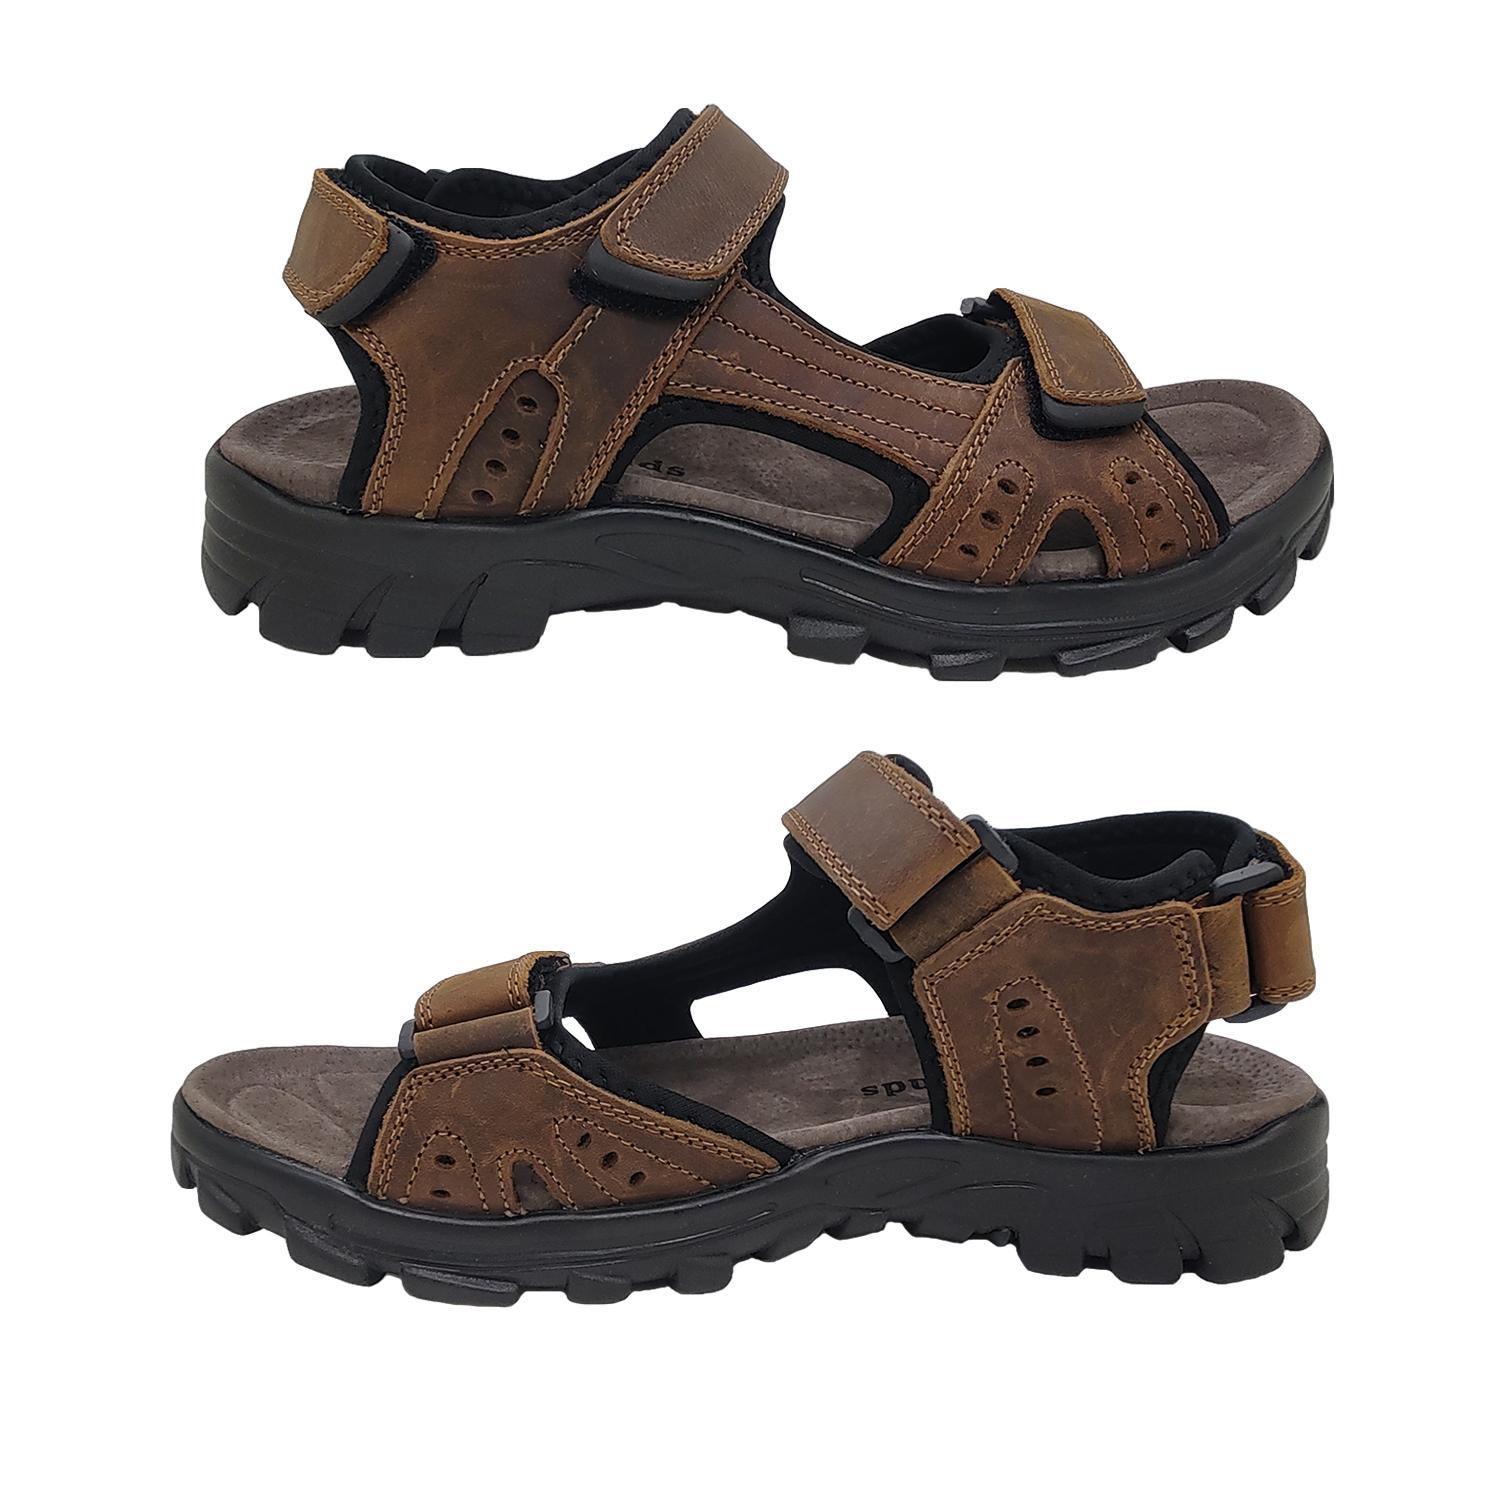 Woodlands Enrique Mens Sandals Leather Upper Multi Adjust Surf Style Comfort-Brown-8